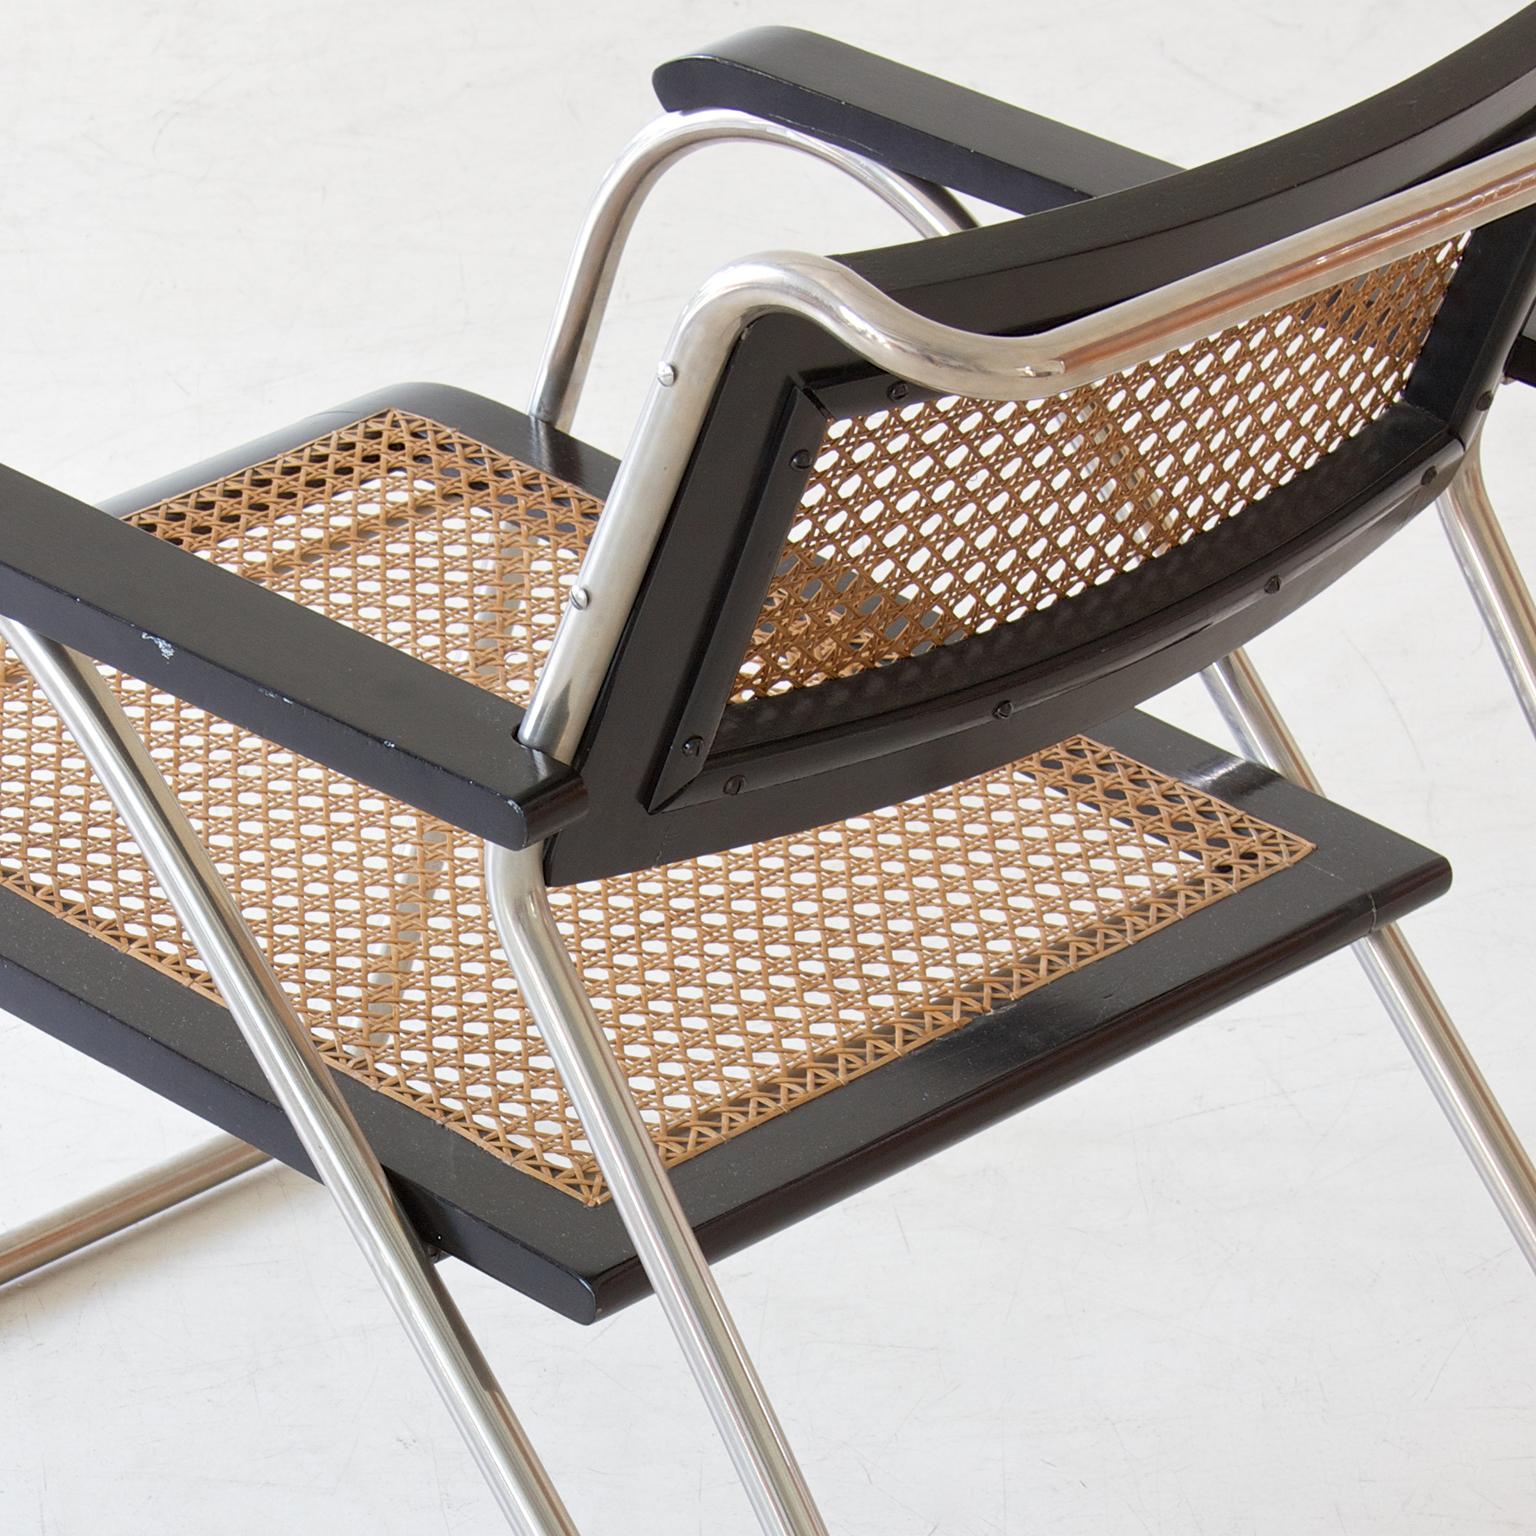 Bauhaus-Sessel aus Stahlrohr von Erich Dieckmann, schwarz lackiertes Holz, 1931 (Metall)